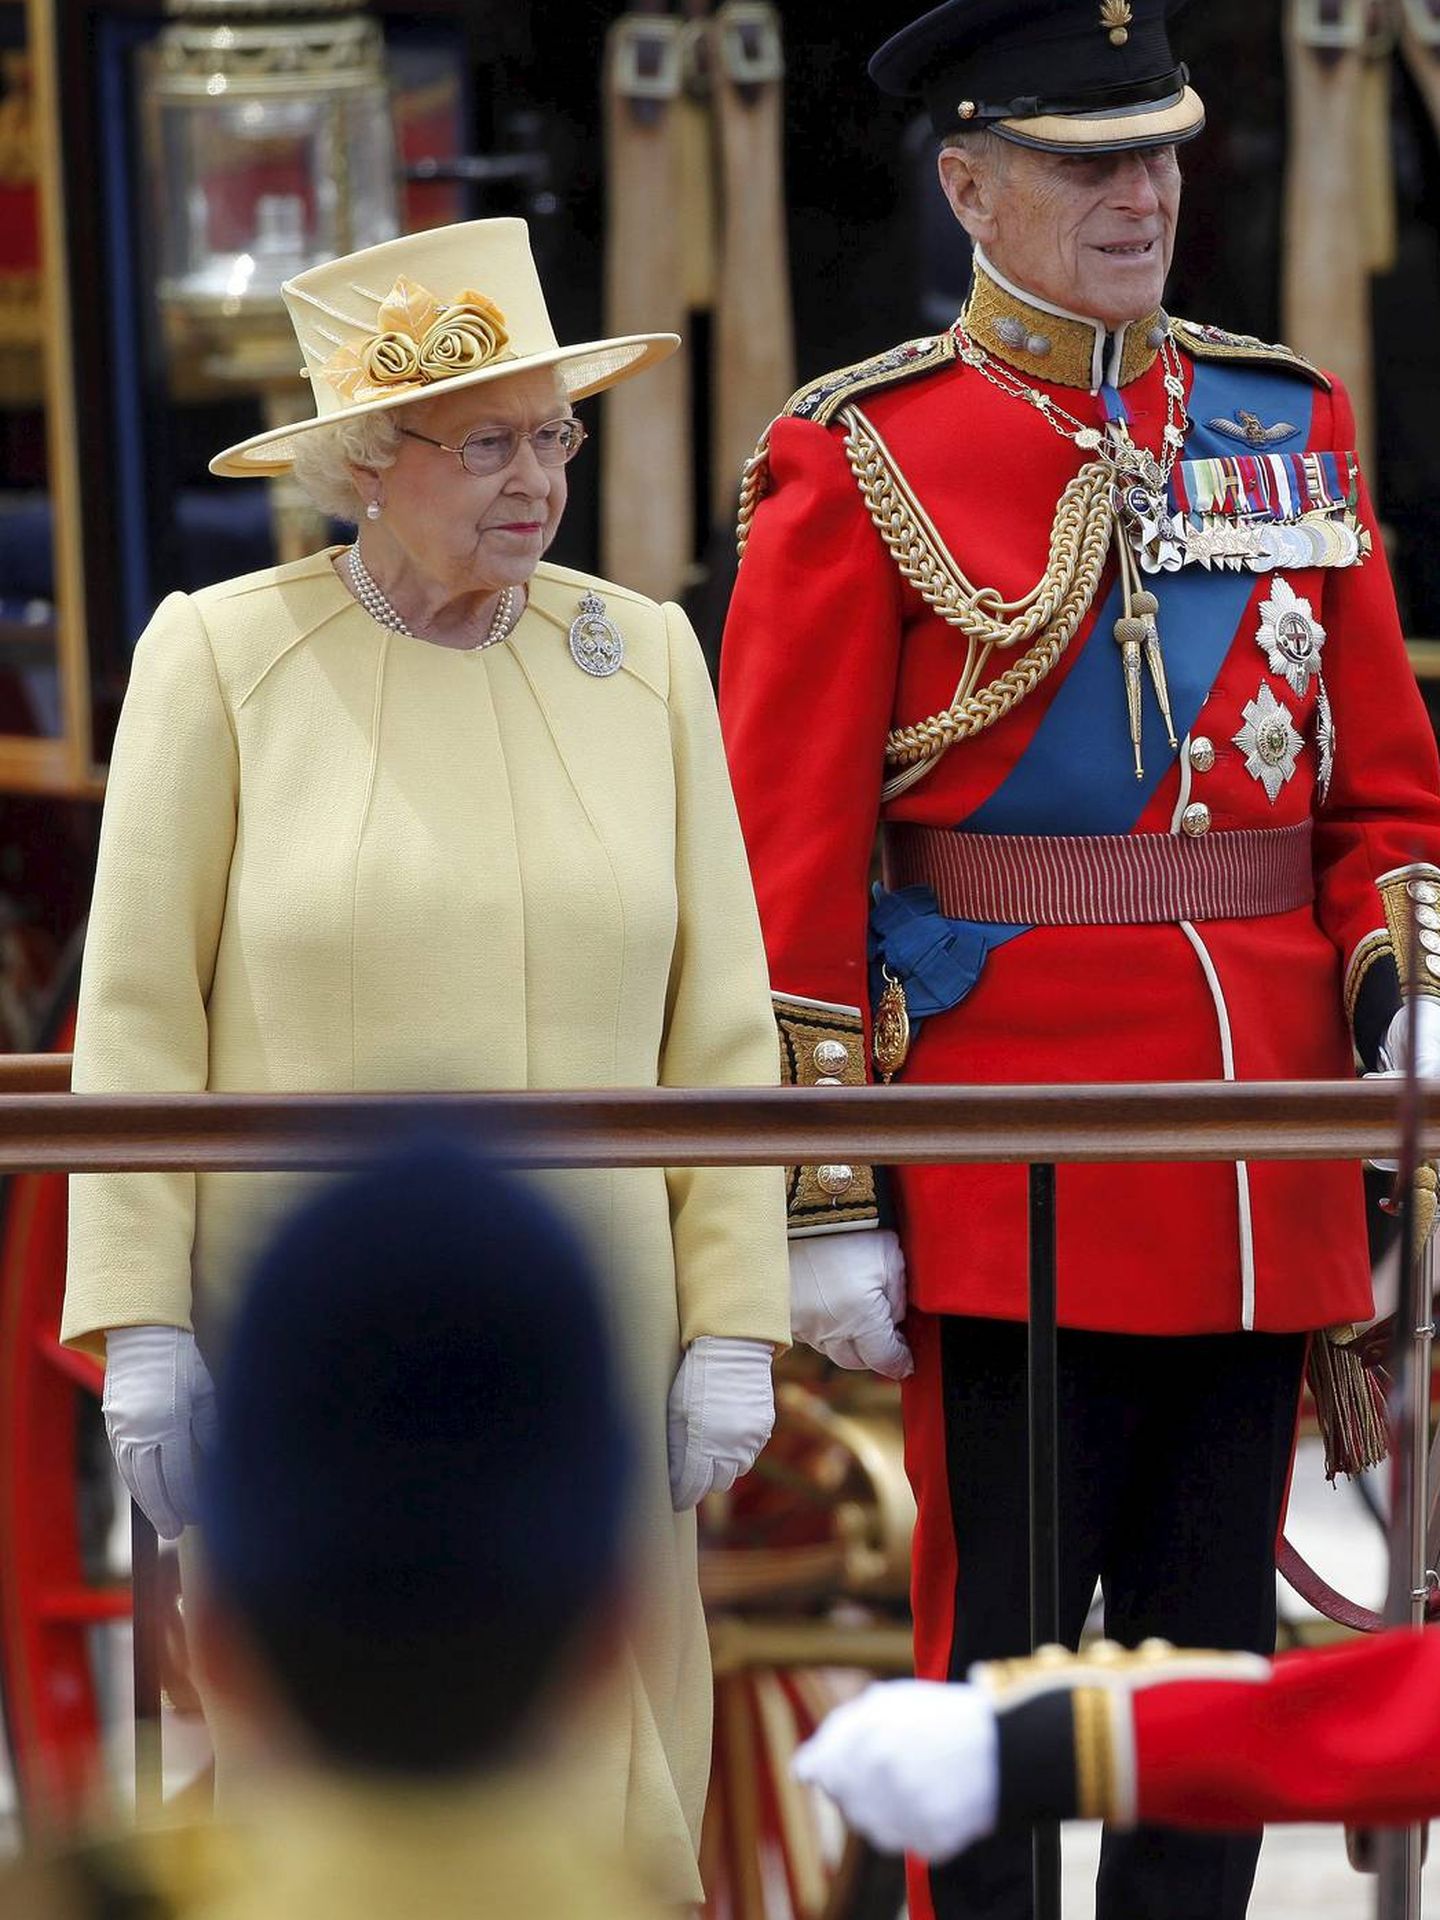 XKP101a. LONDRES (REINO UNIDO), 16/6/2012.- La reina Isabel II de Inglaterra (izda) y su marido Felipe duque de Edimburgo (dcha) observan el desfile por las calles de Londres (Reino Unido) con motivo de la celebración oficial de su cumpleaños hoy, sábado 16 de junio de 2012. Tradicionalmente, Isabel II celebra con dos festejos diferentes su cumpleaños: de manera privada el 21 de abril, la fecha real de su nacimiento, y una segunda durante el mes de junio que, este año, se conmemora hoy con un tradicional desfile militar por sus 86 años. EFE/Karel Prinsloo